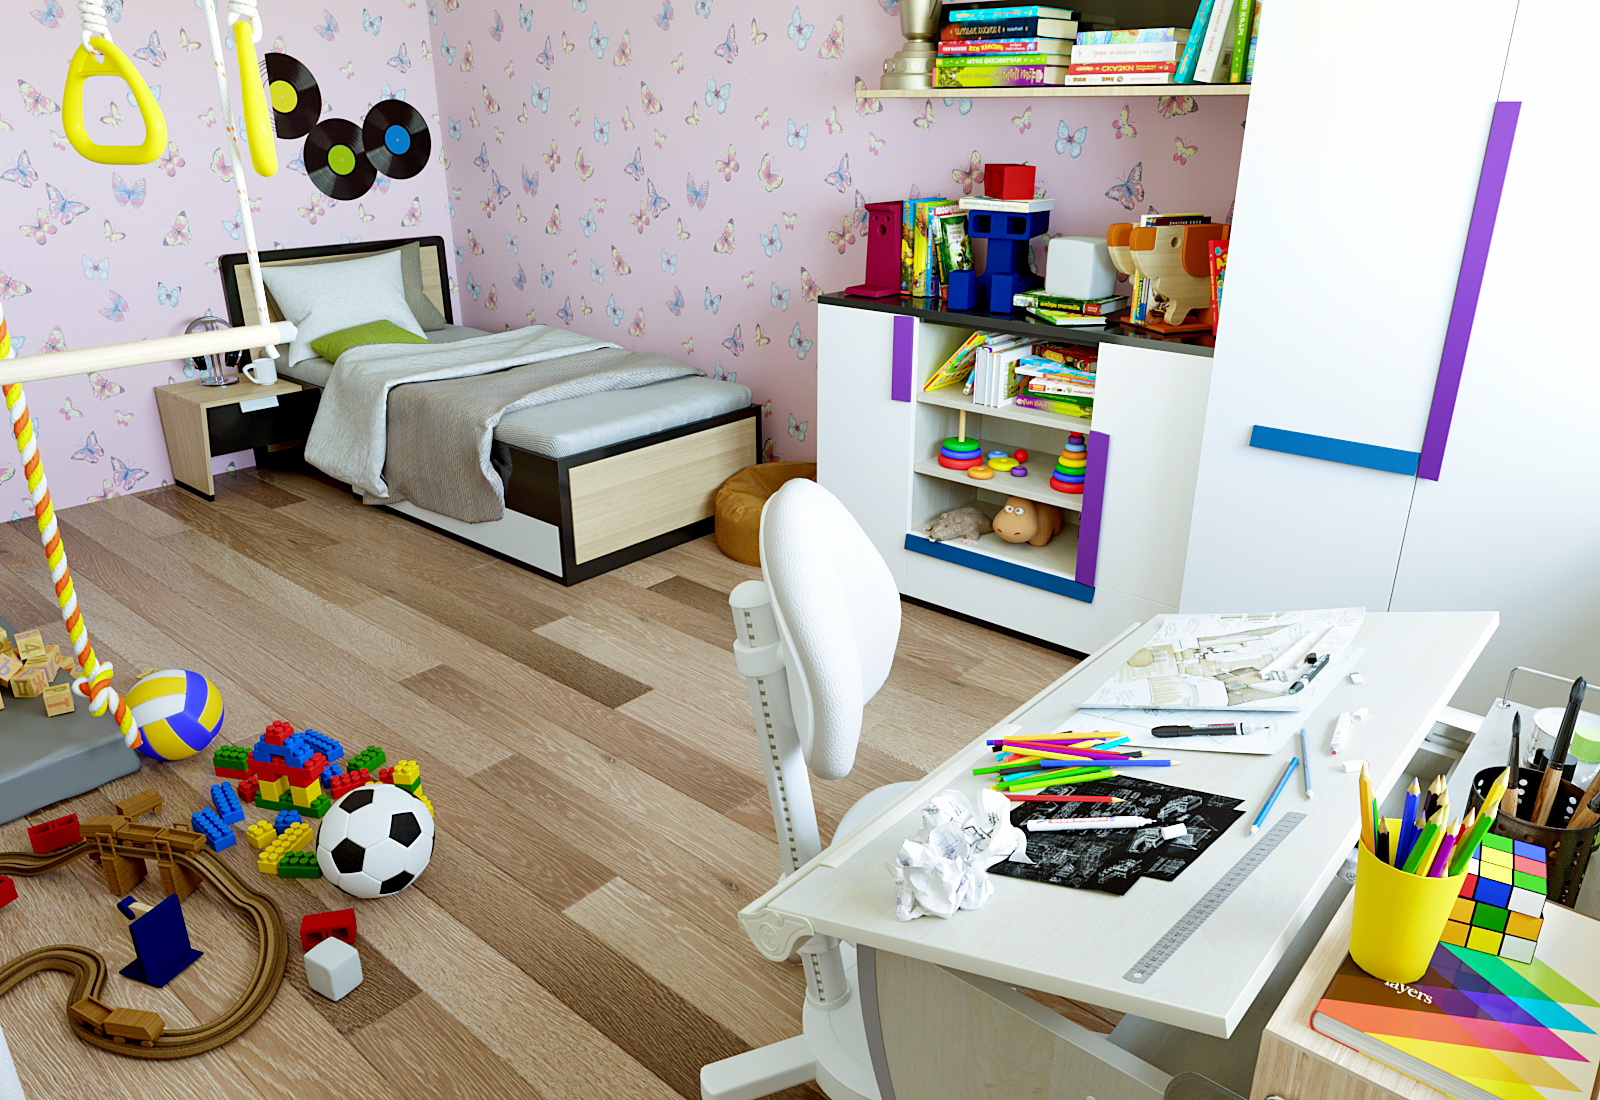 3D- Визуализация детской комнаты в 3d max corona render изображение